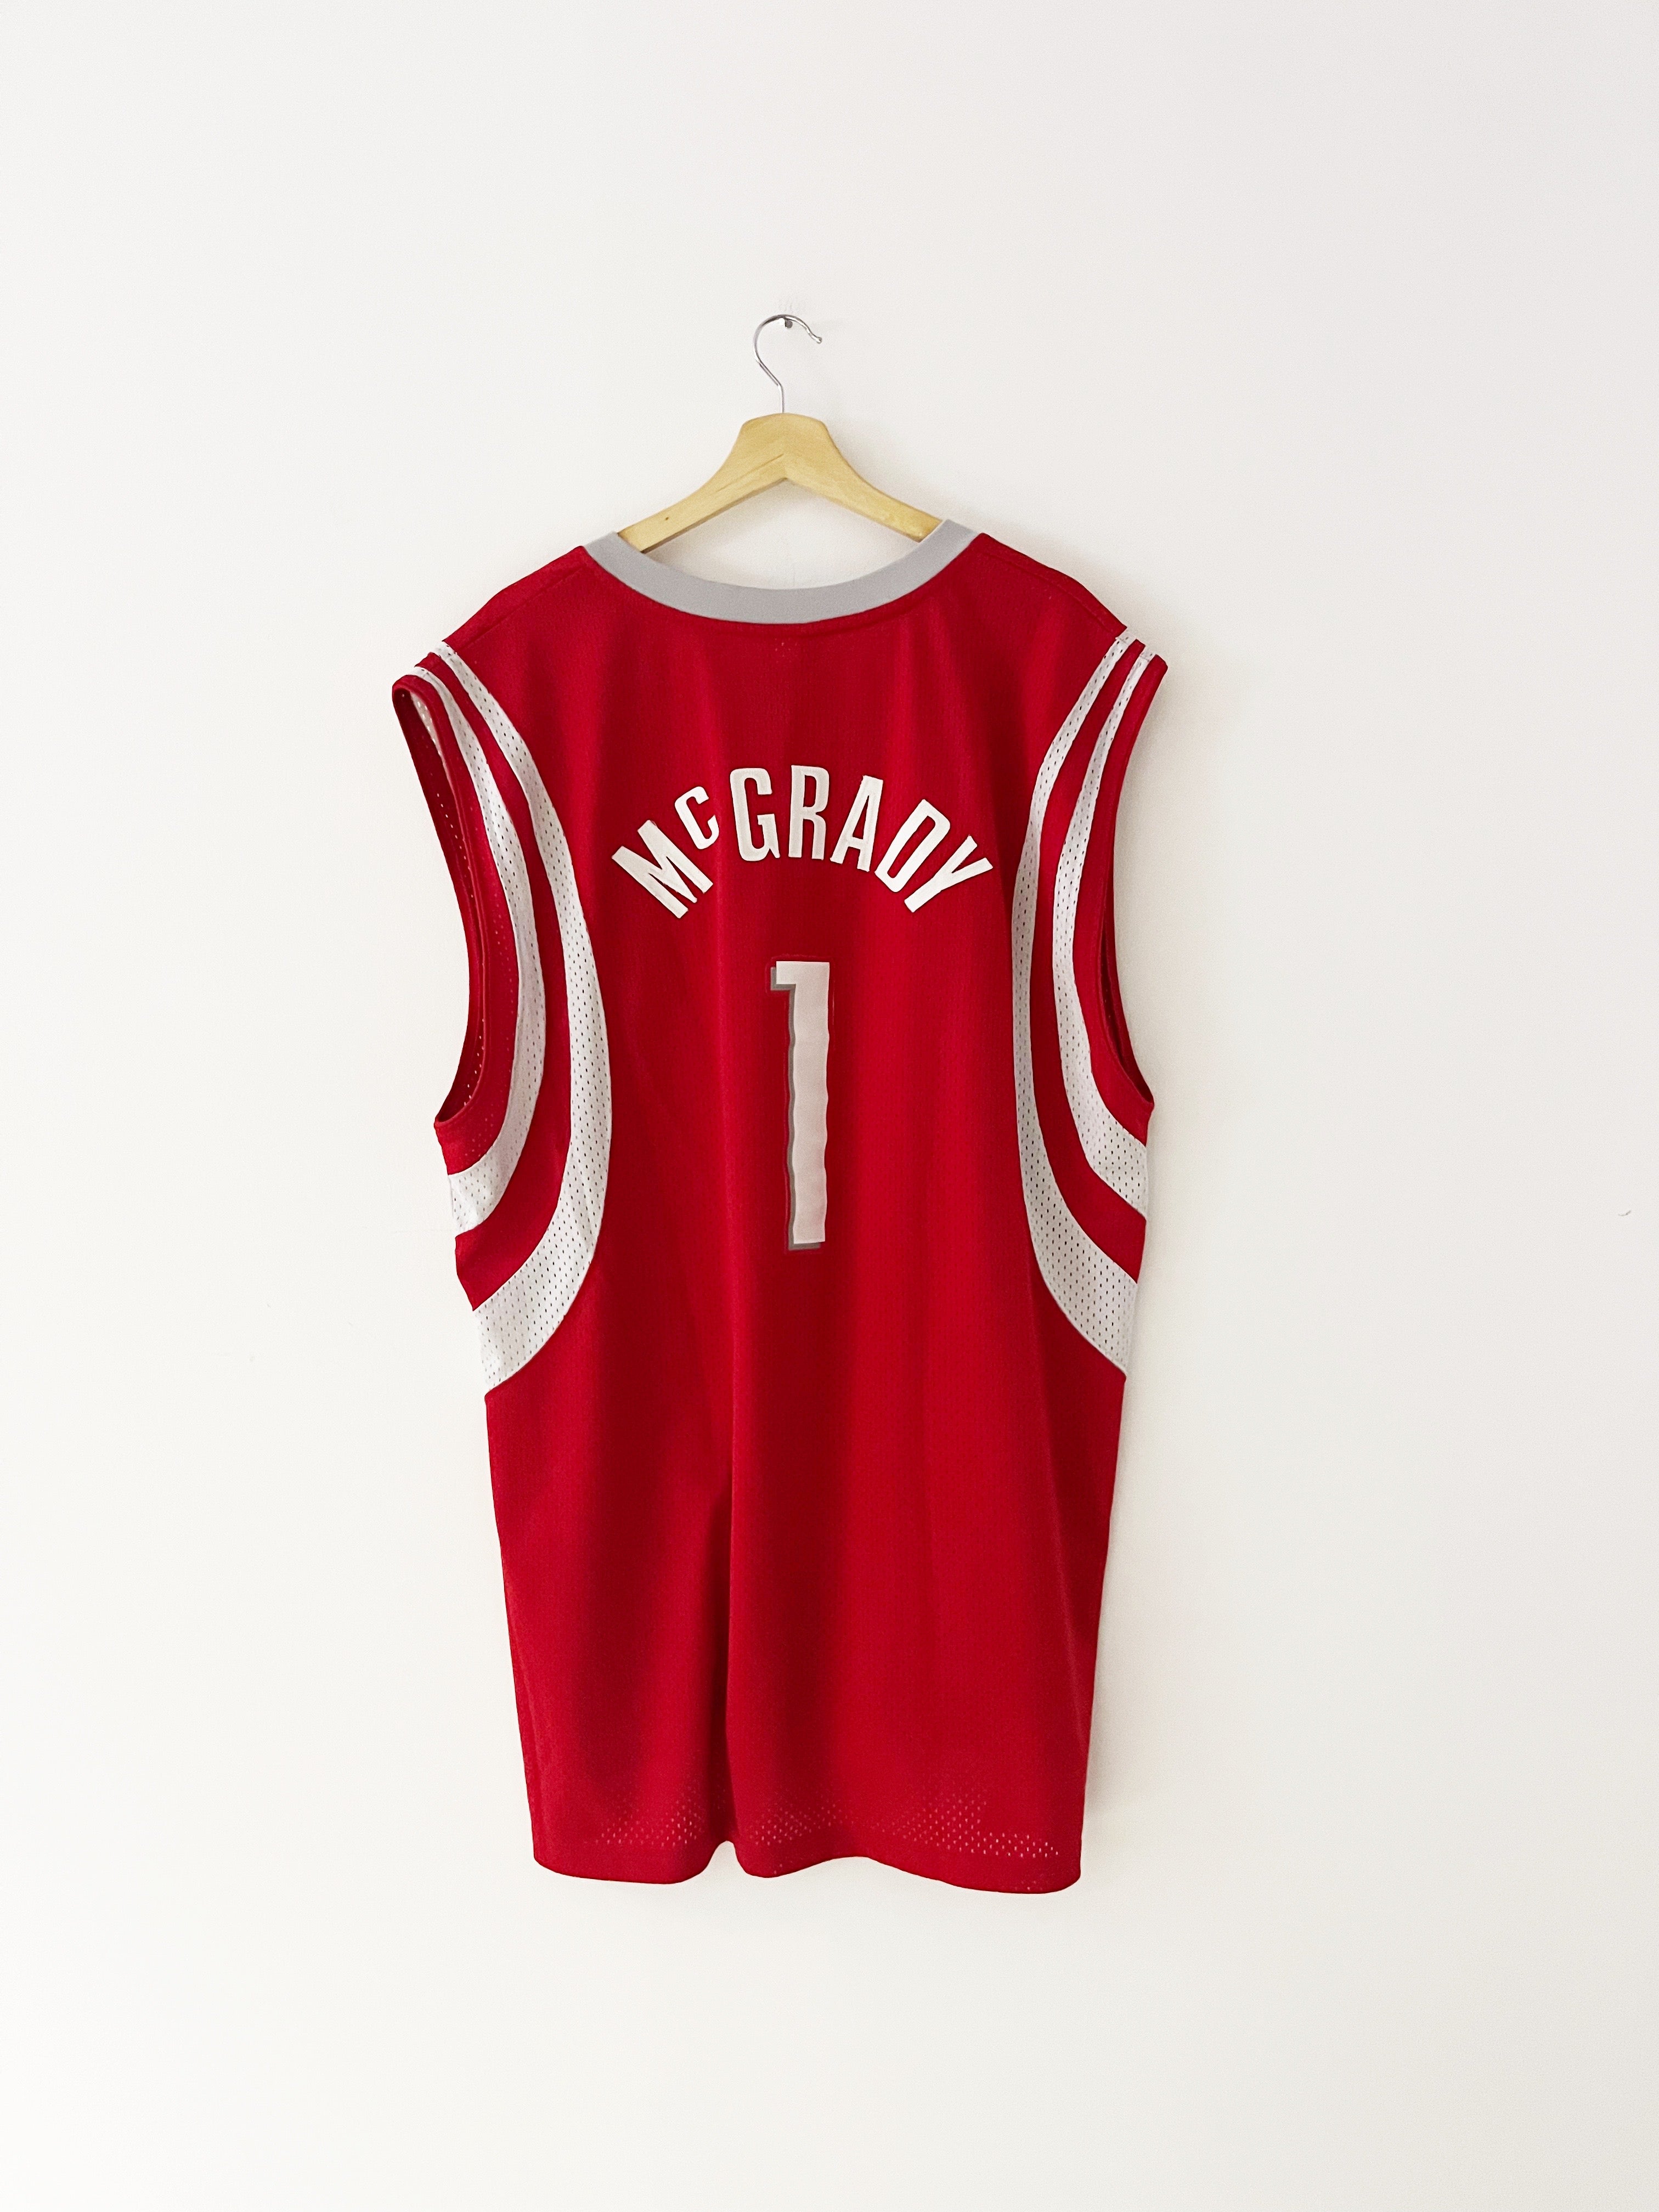 2003-06 Houston Rockets Reebok Road Jersey McGrady #1 (XL) 9/10